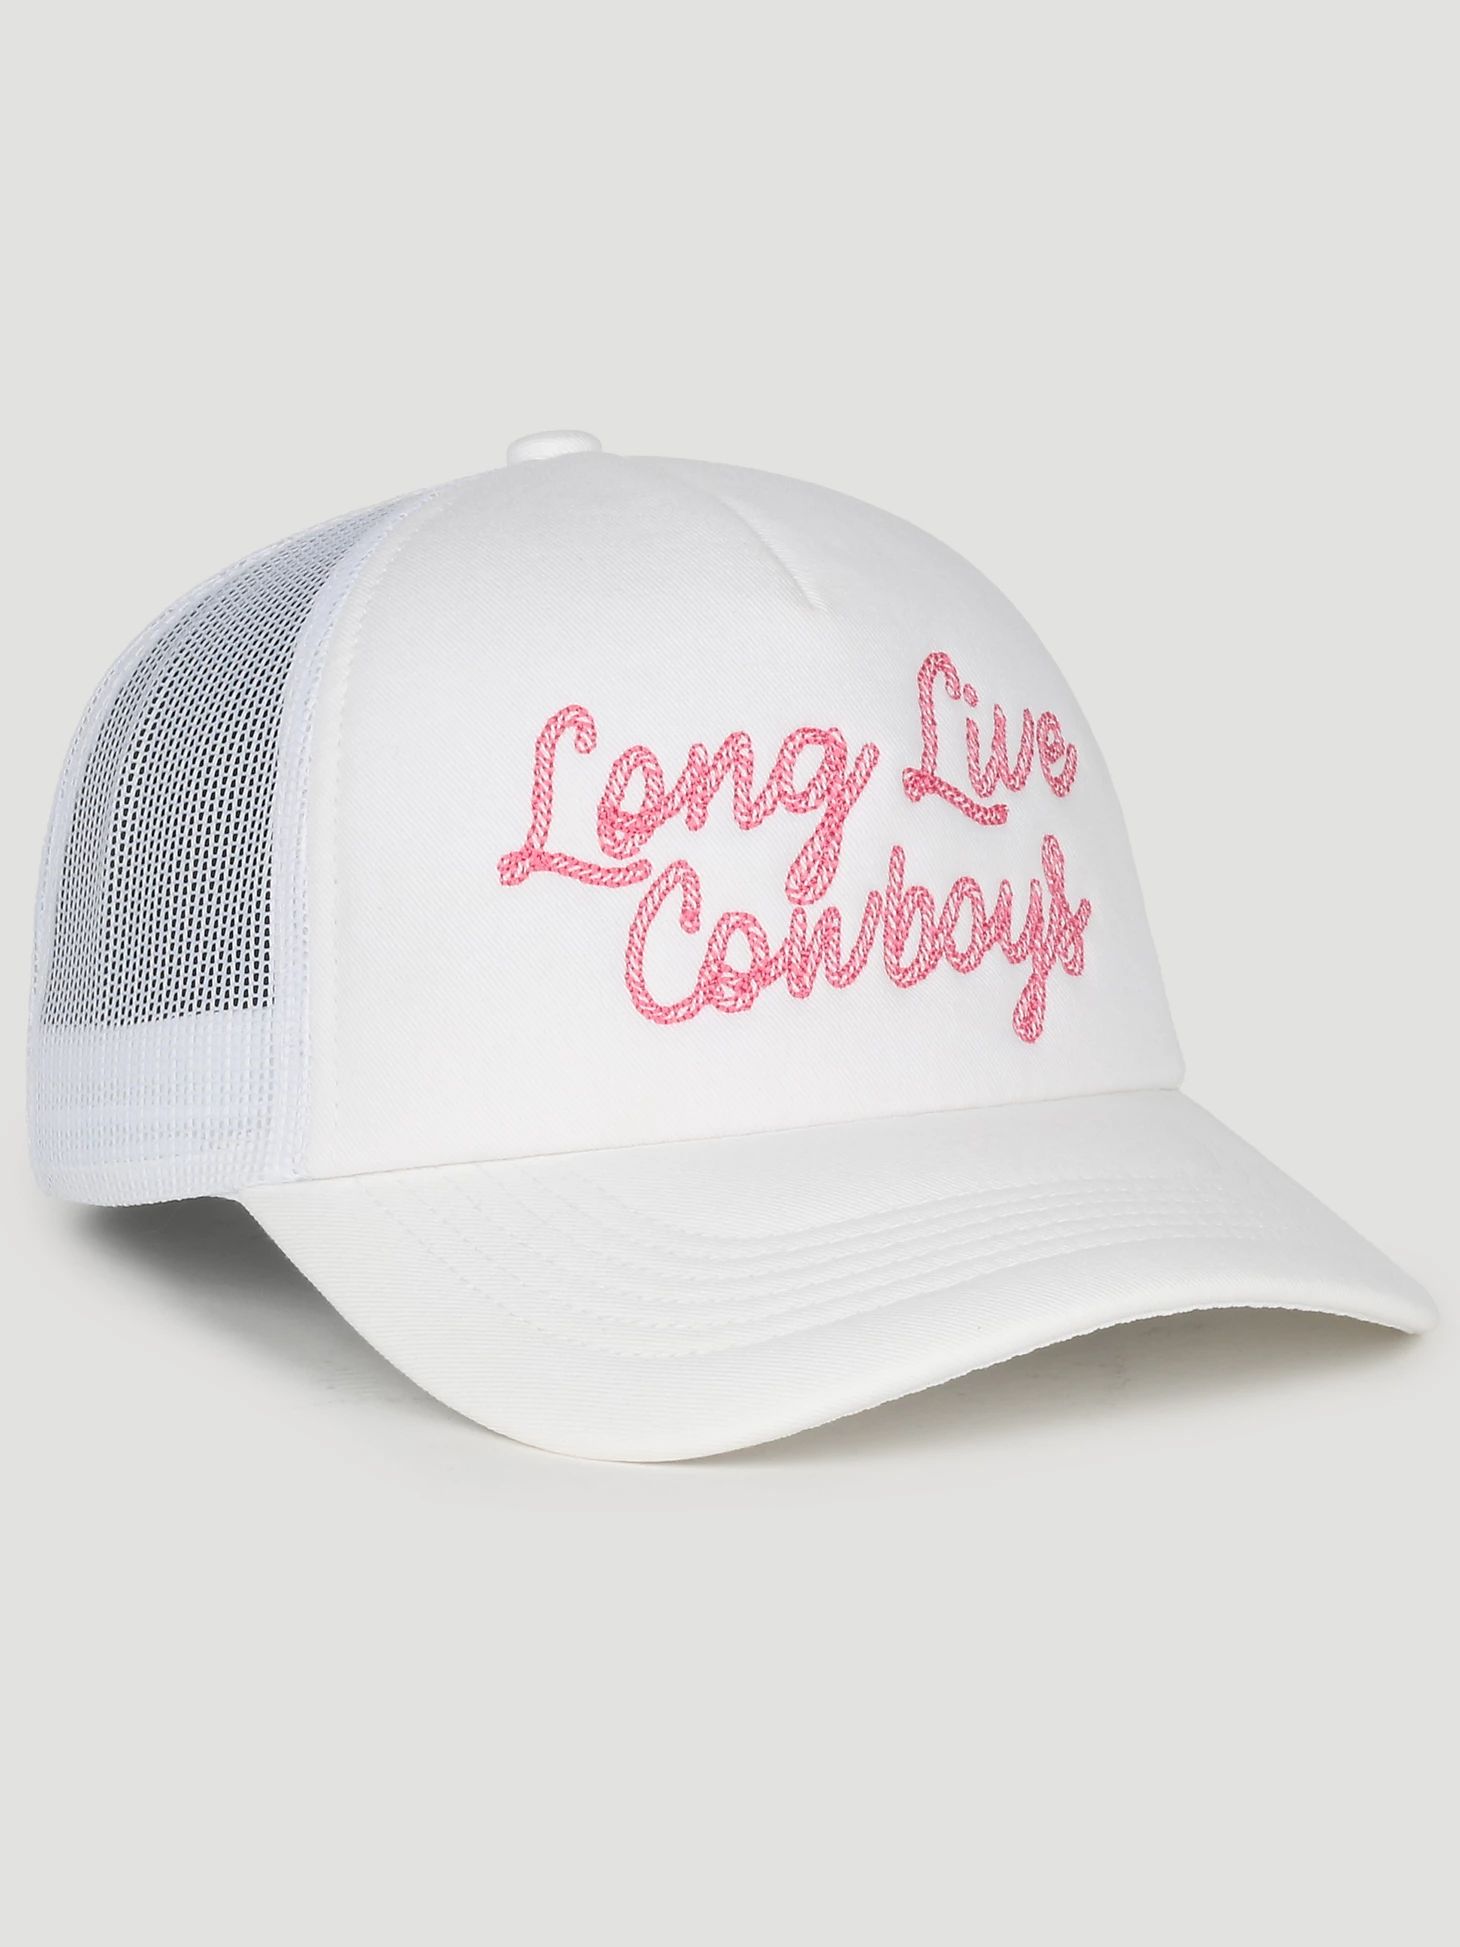 Long Live Cowboys Baseball Cap in White | Wrangler